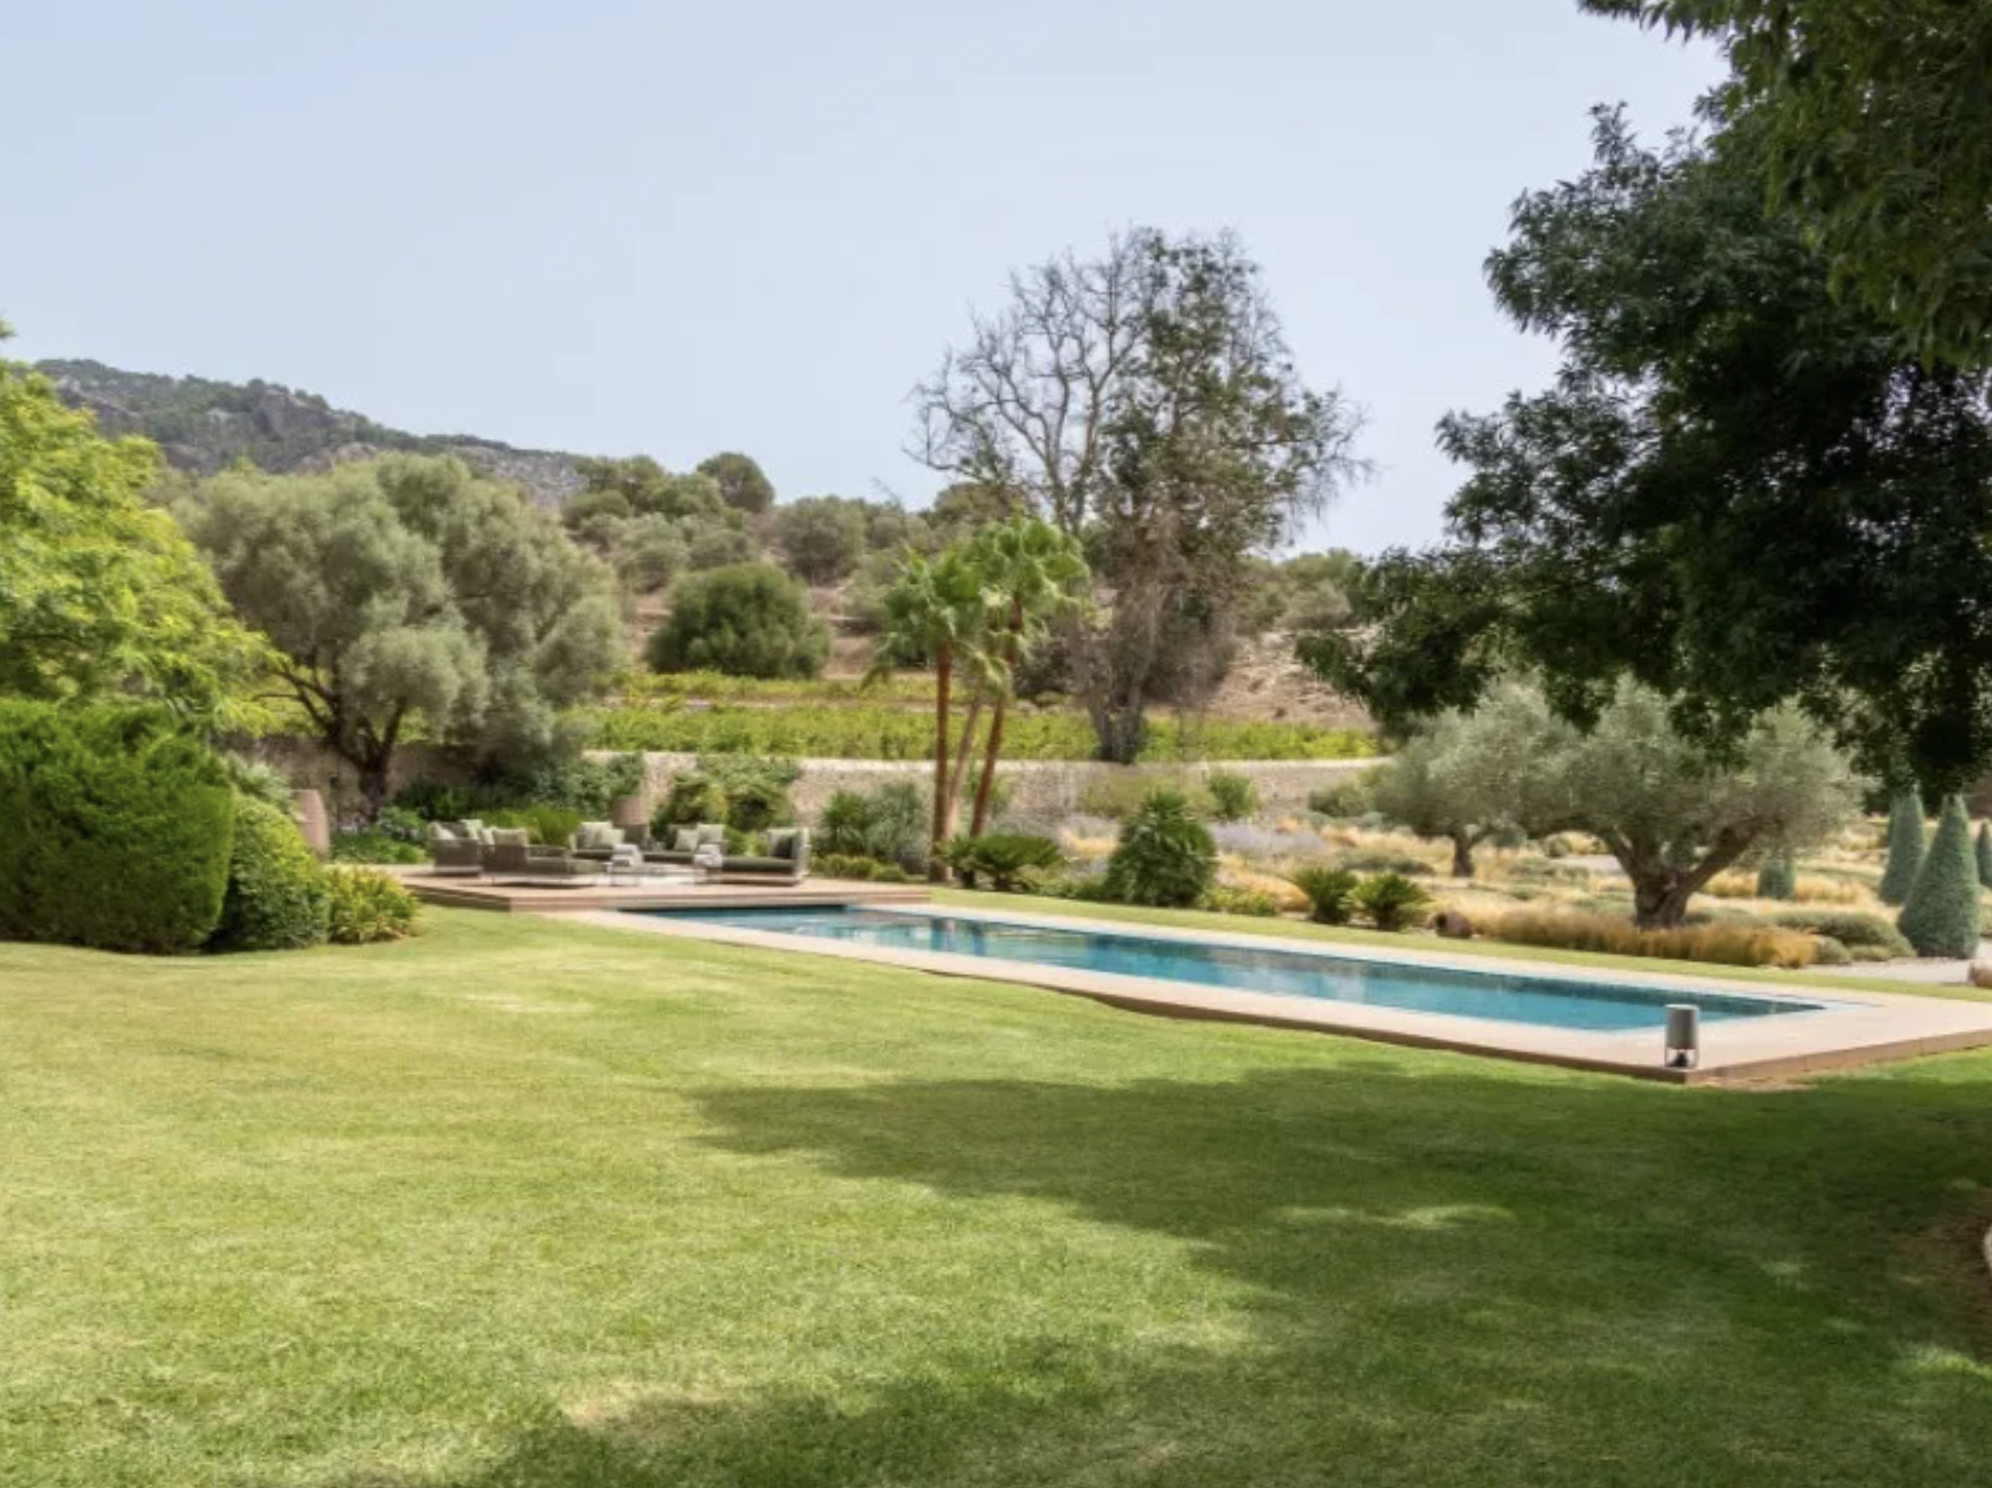 Francis York Luxurious Estate in Countryside Near Palma de Mallorca 00010.png